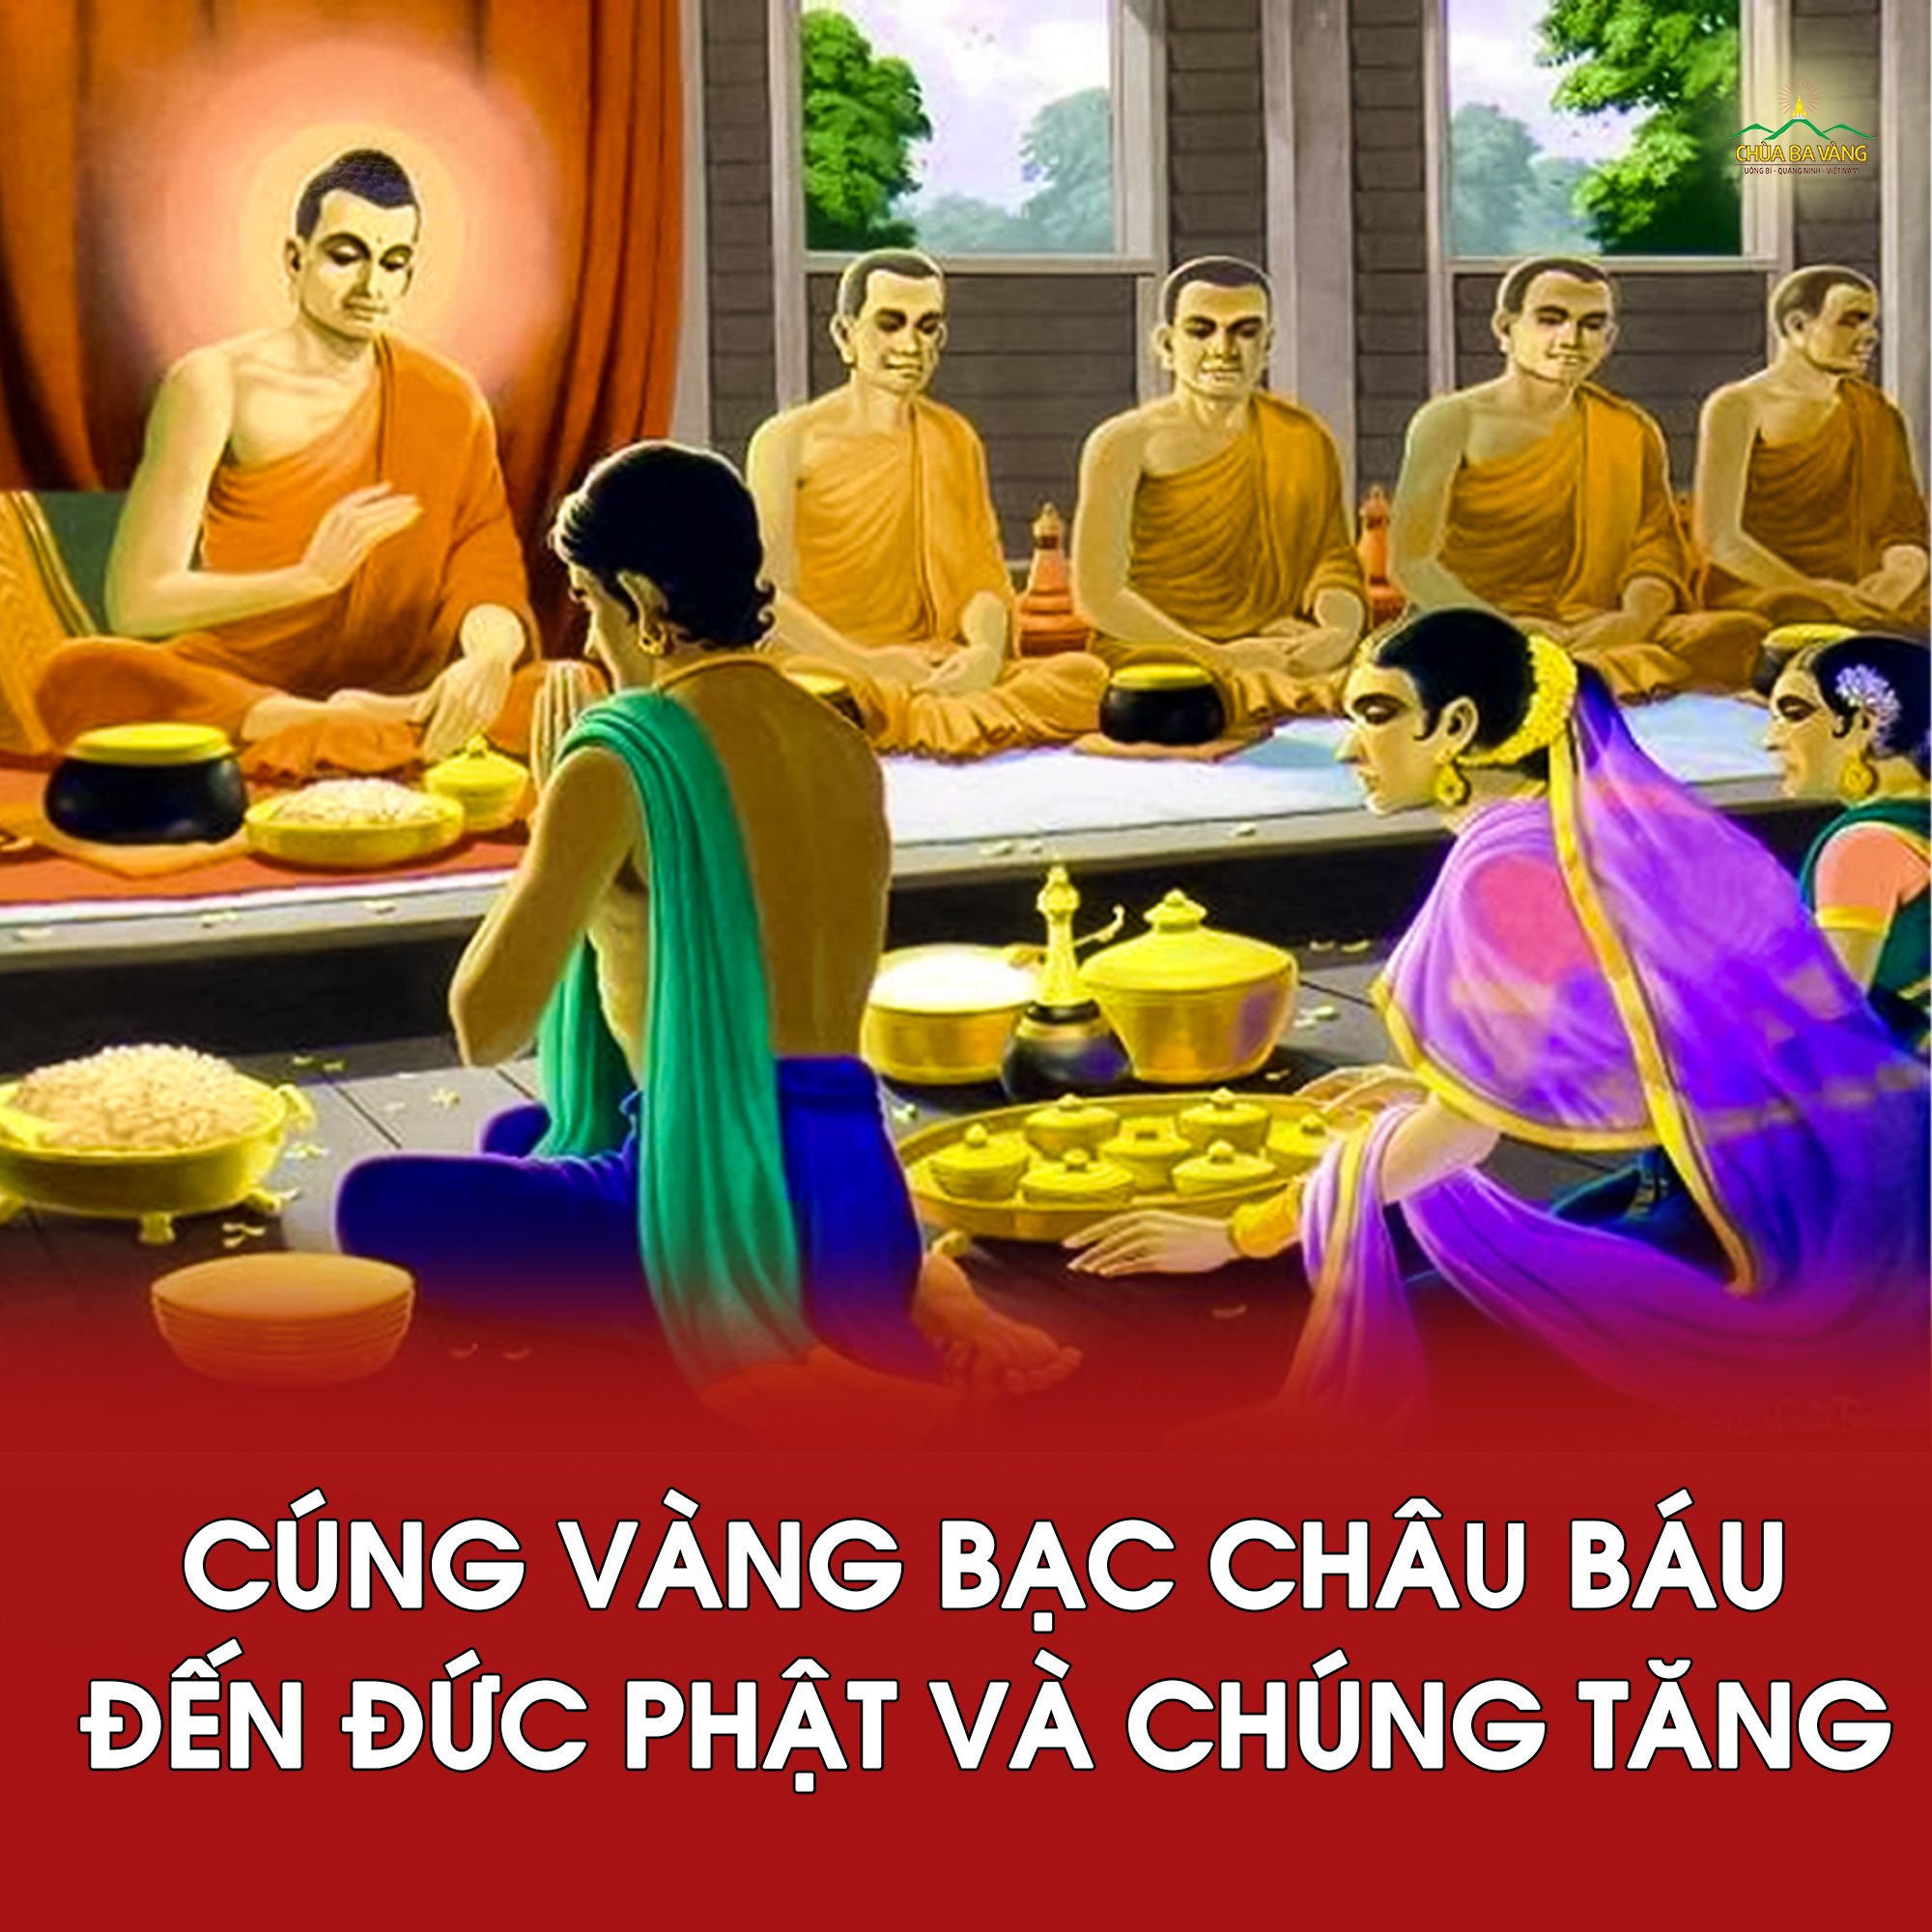 Đức Phật nhận cúng dường vàng bạc, châu báu từ các Phật tử